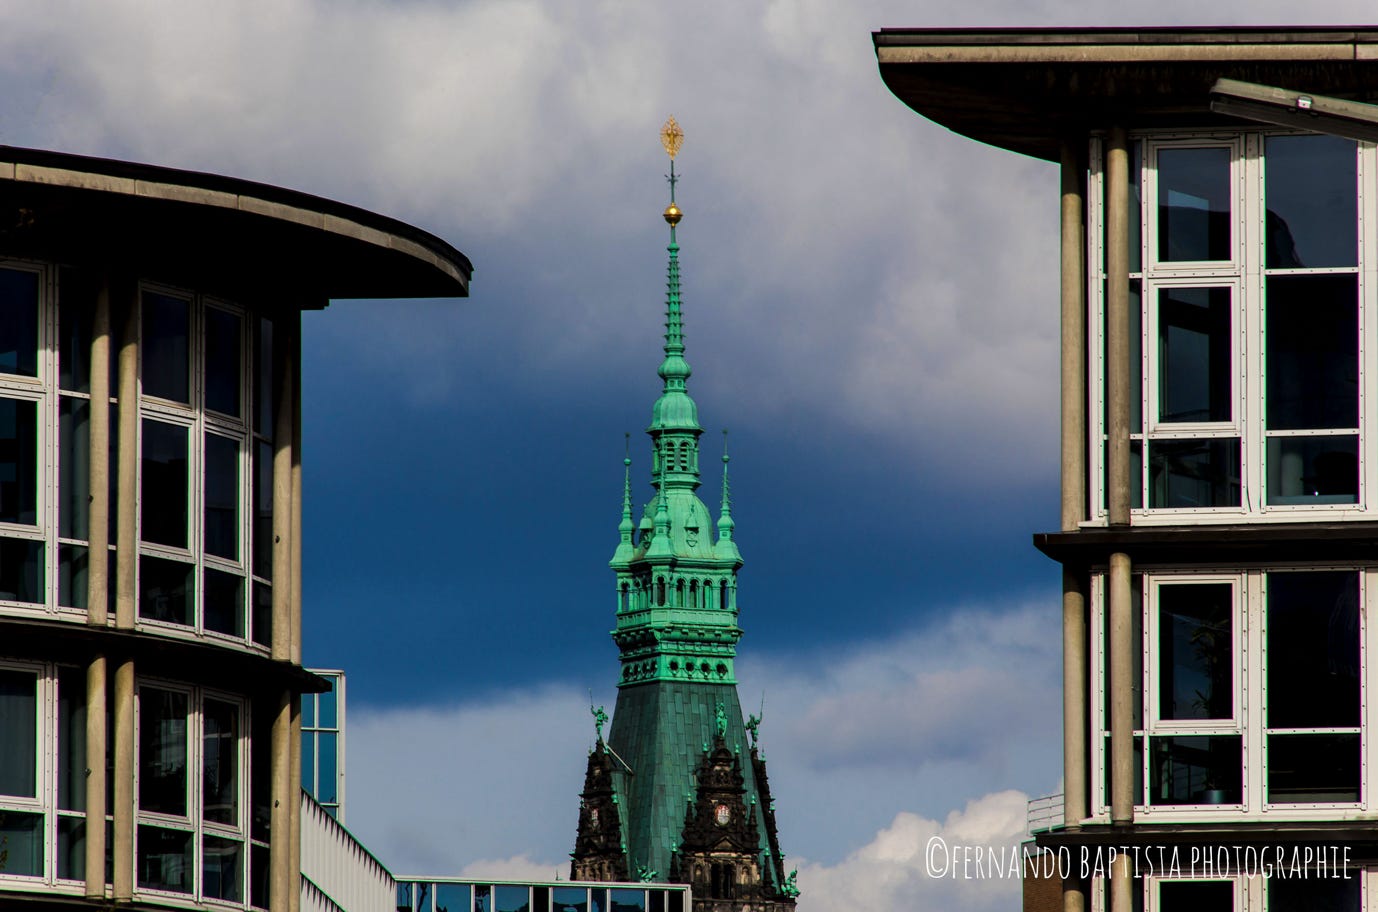 Rathaus-Turmspitze in Hamburg zwischen zwei Gebäuden.